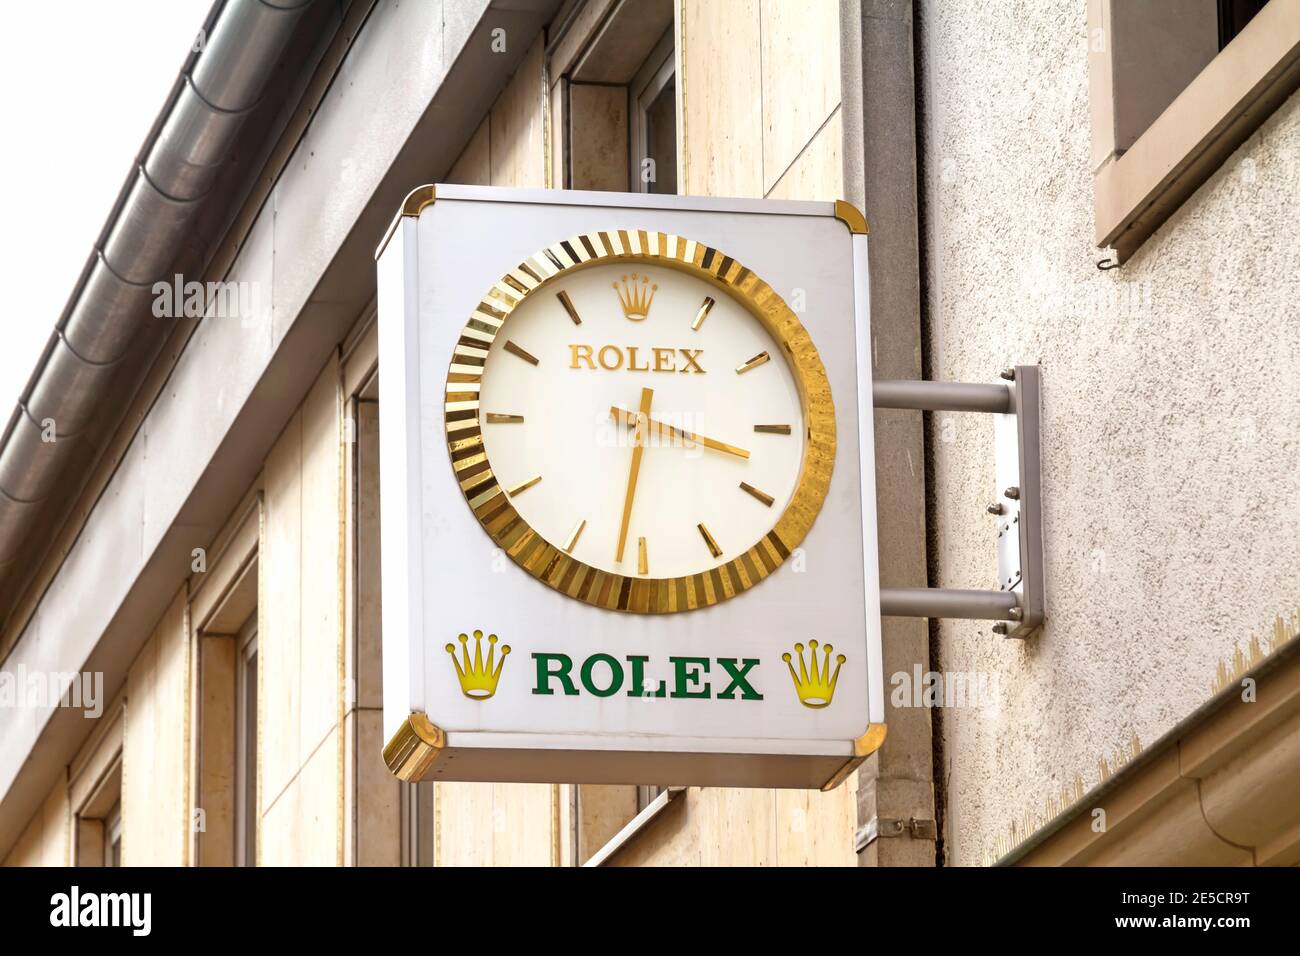 Rolex Fensteranzeige Stockfotos und -bilder Kaufen - Alamy